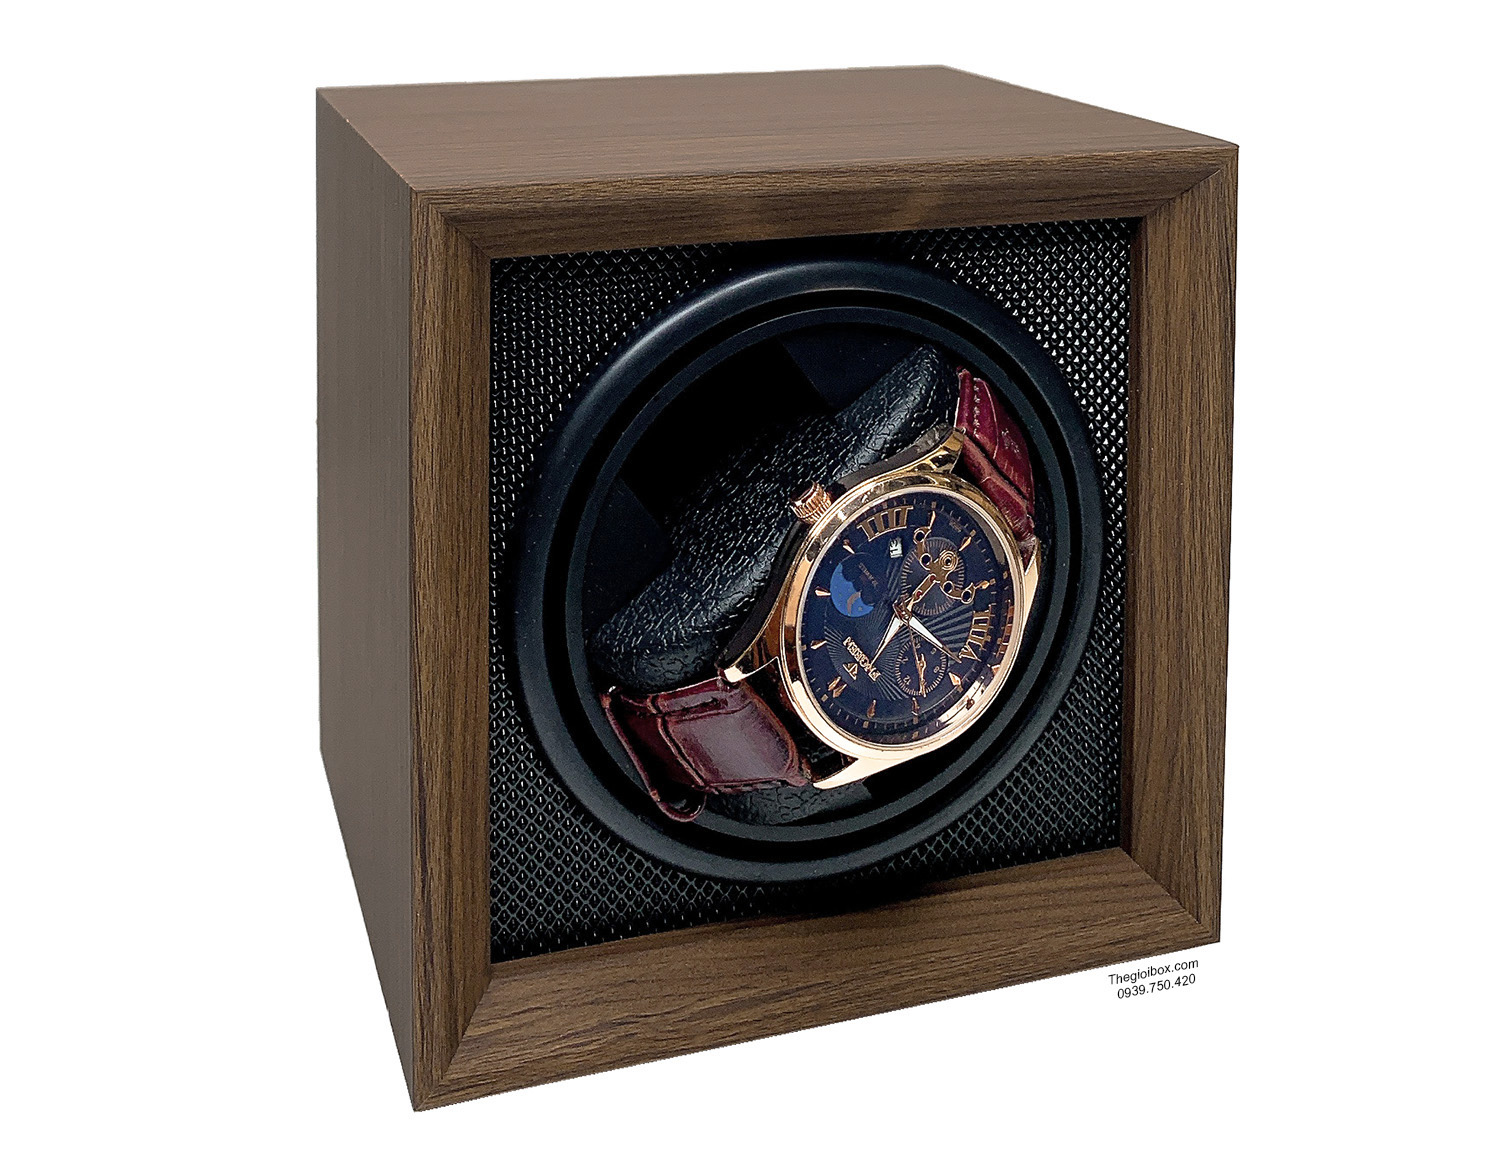 Hộp xoay đồng hồ cơ 1 không nắp vỏ gỗ nội thất nhựa đen giá rẻ